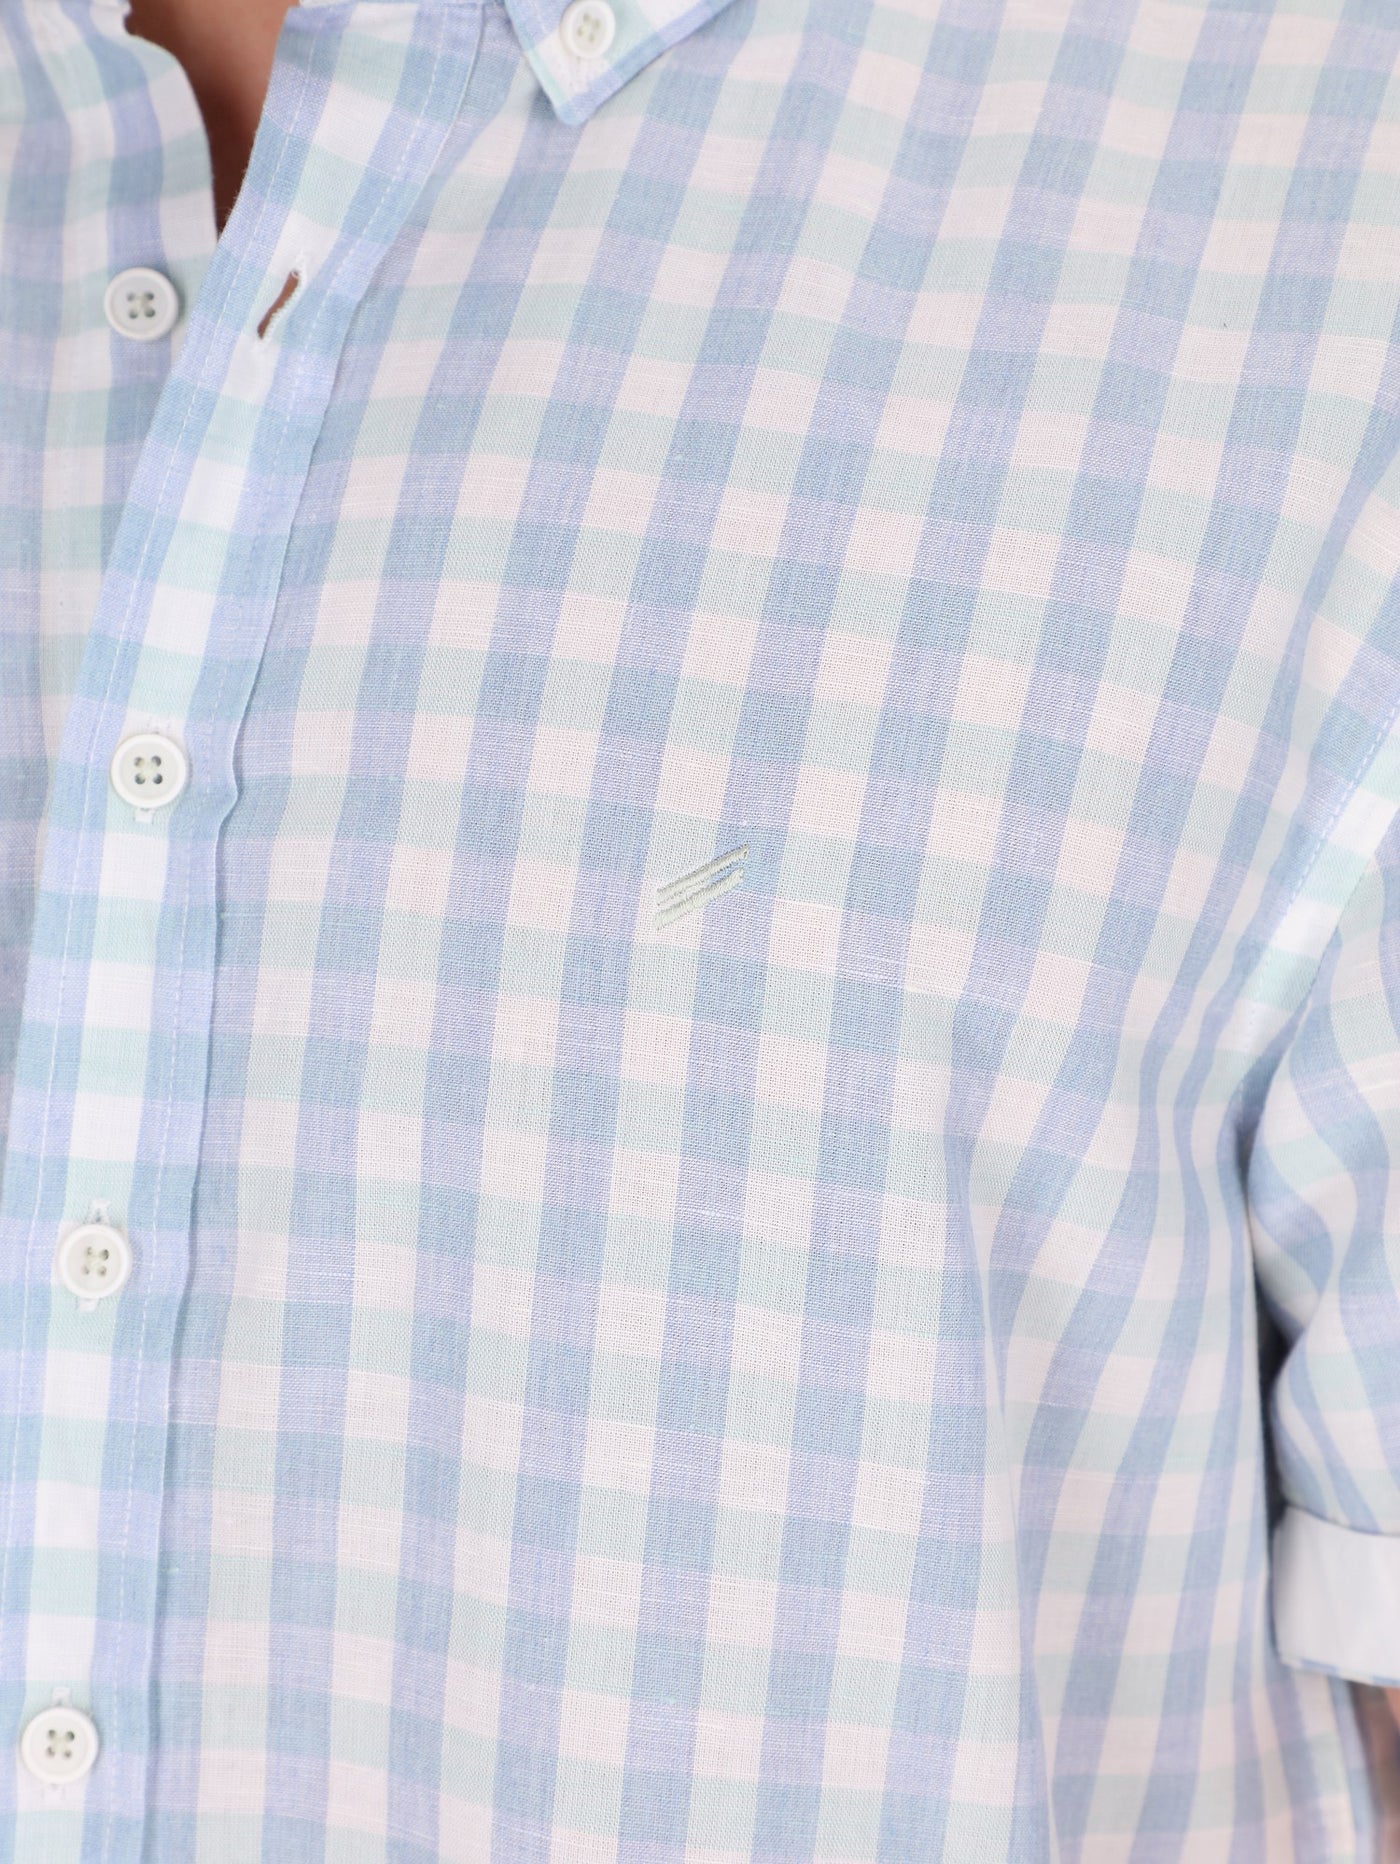 Daniel Hechter Men's Checkered Rolled-Up Short Sleeve Shirt